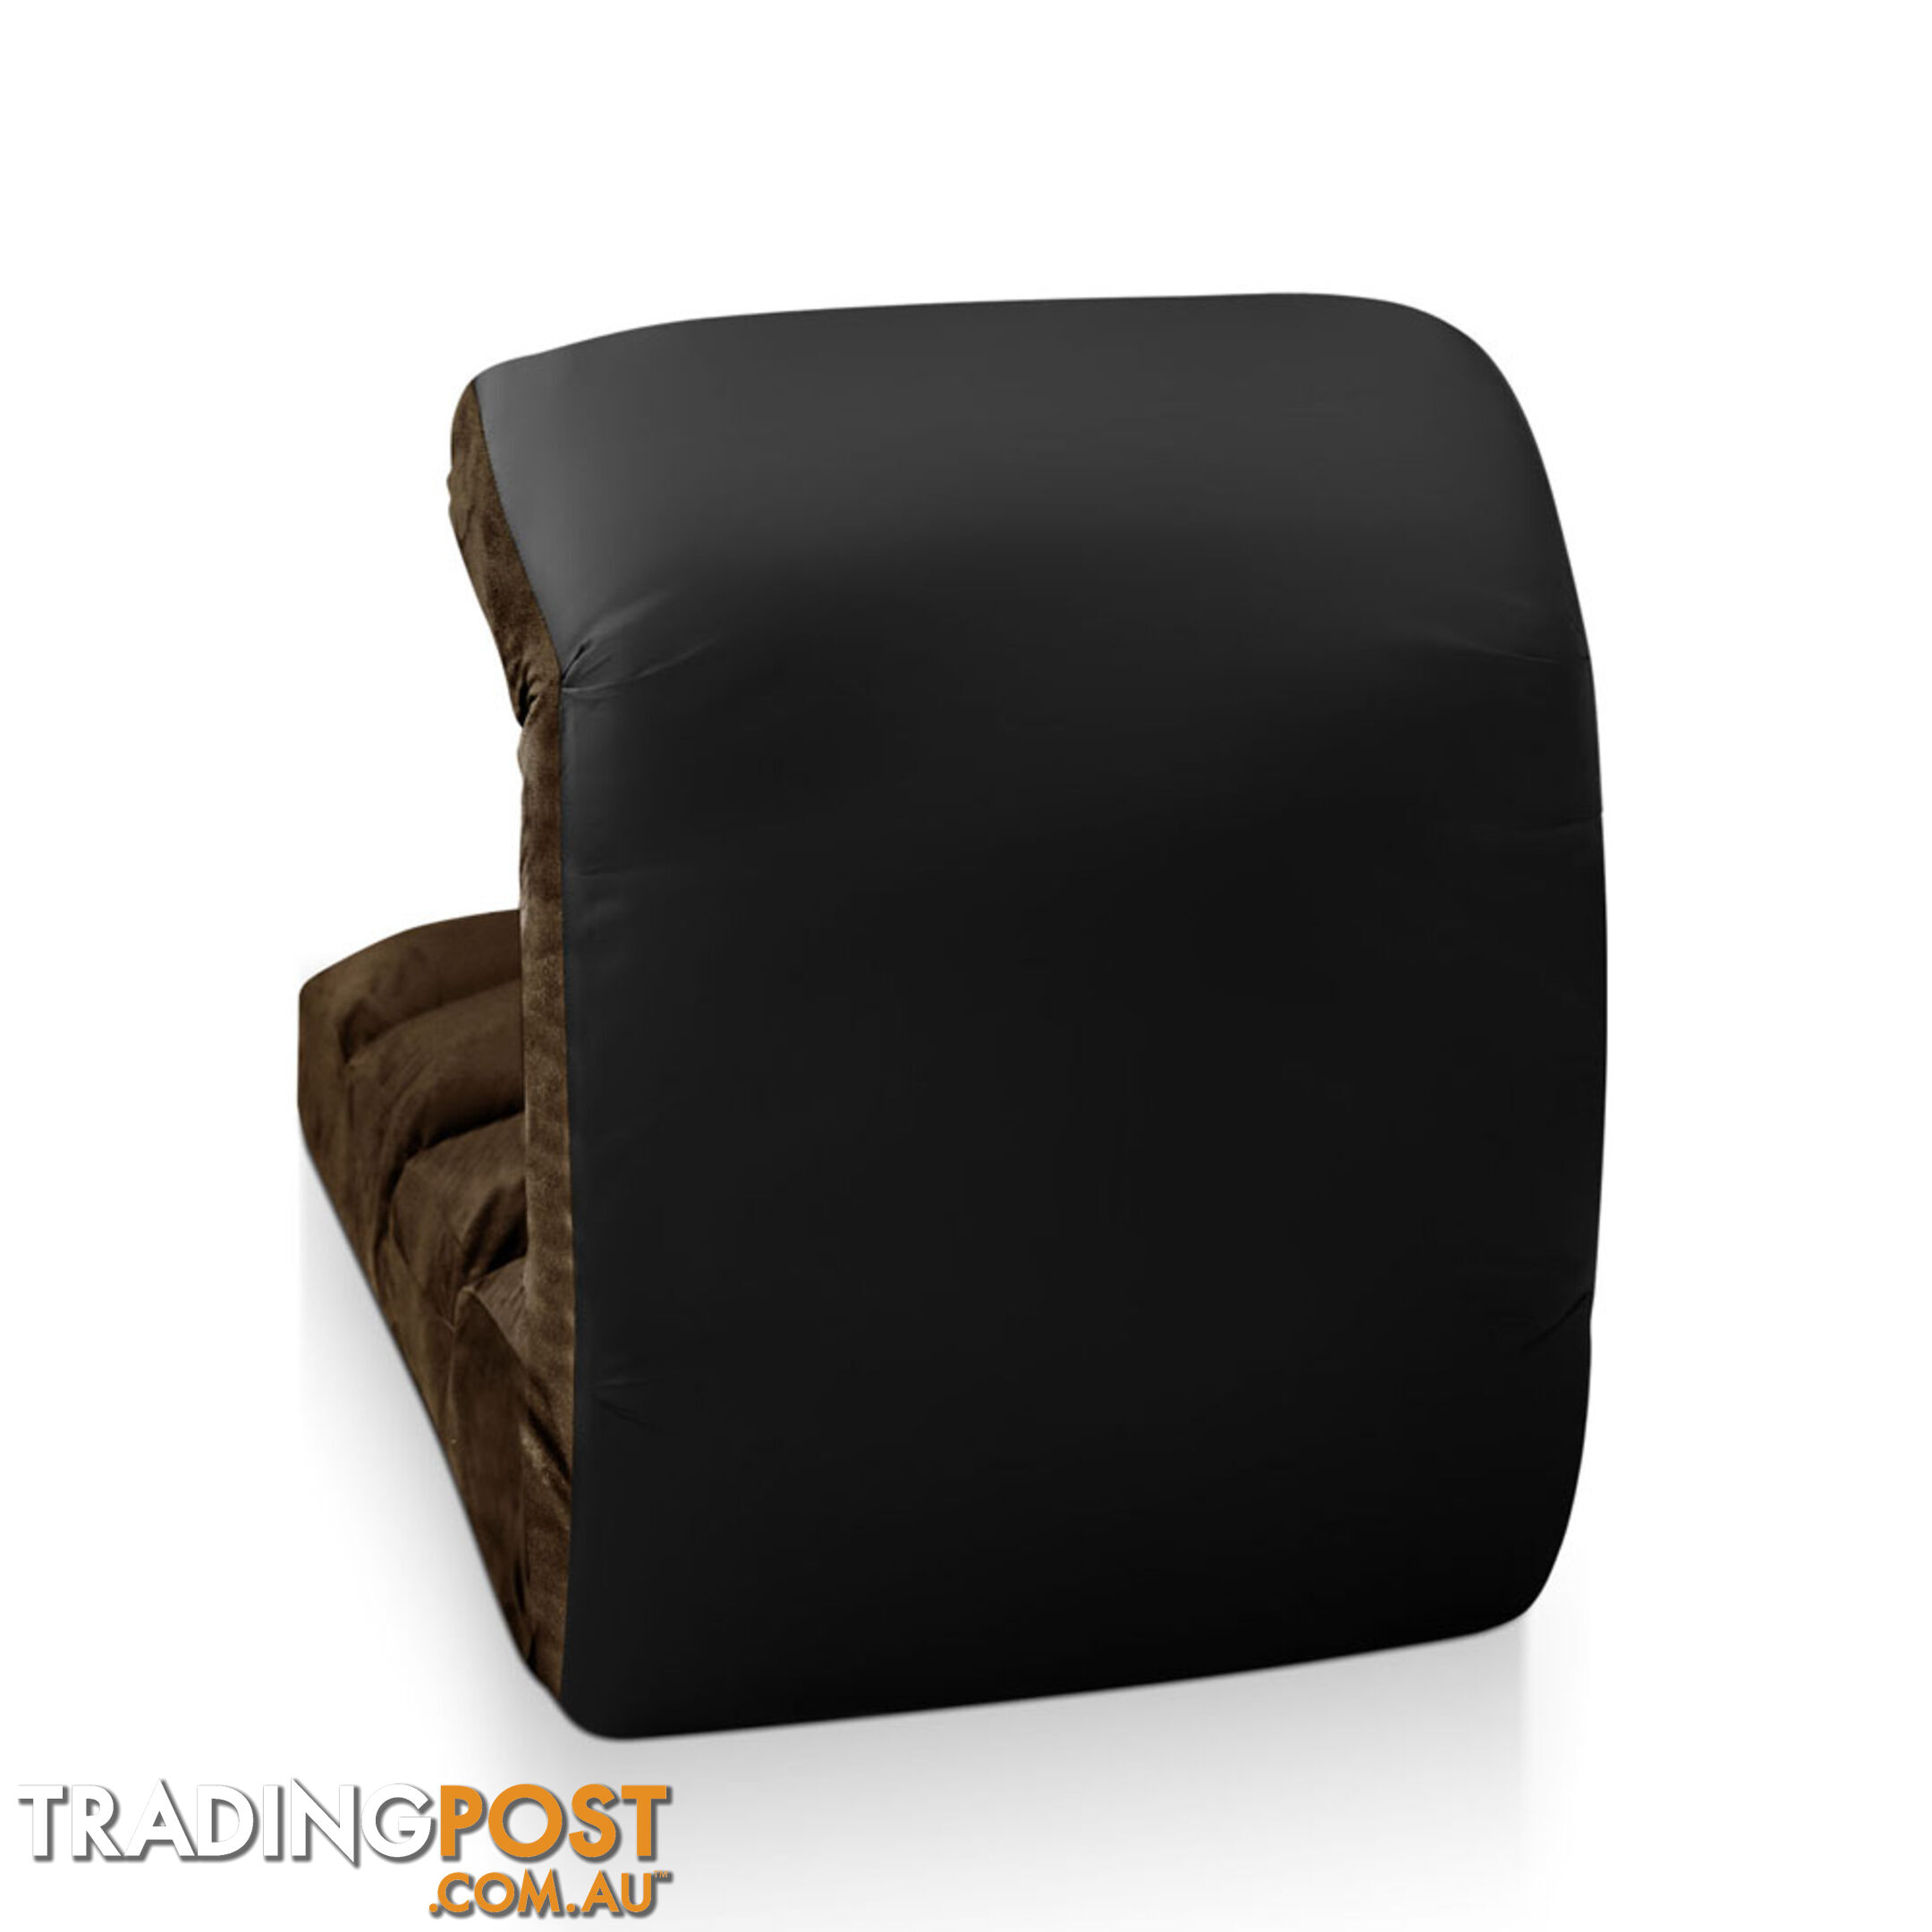 Lounge Sofa Chair - 75 Adjustable Angles _ Brown